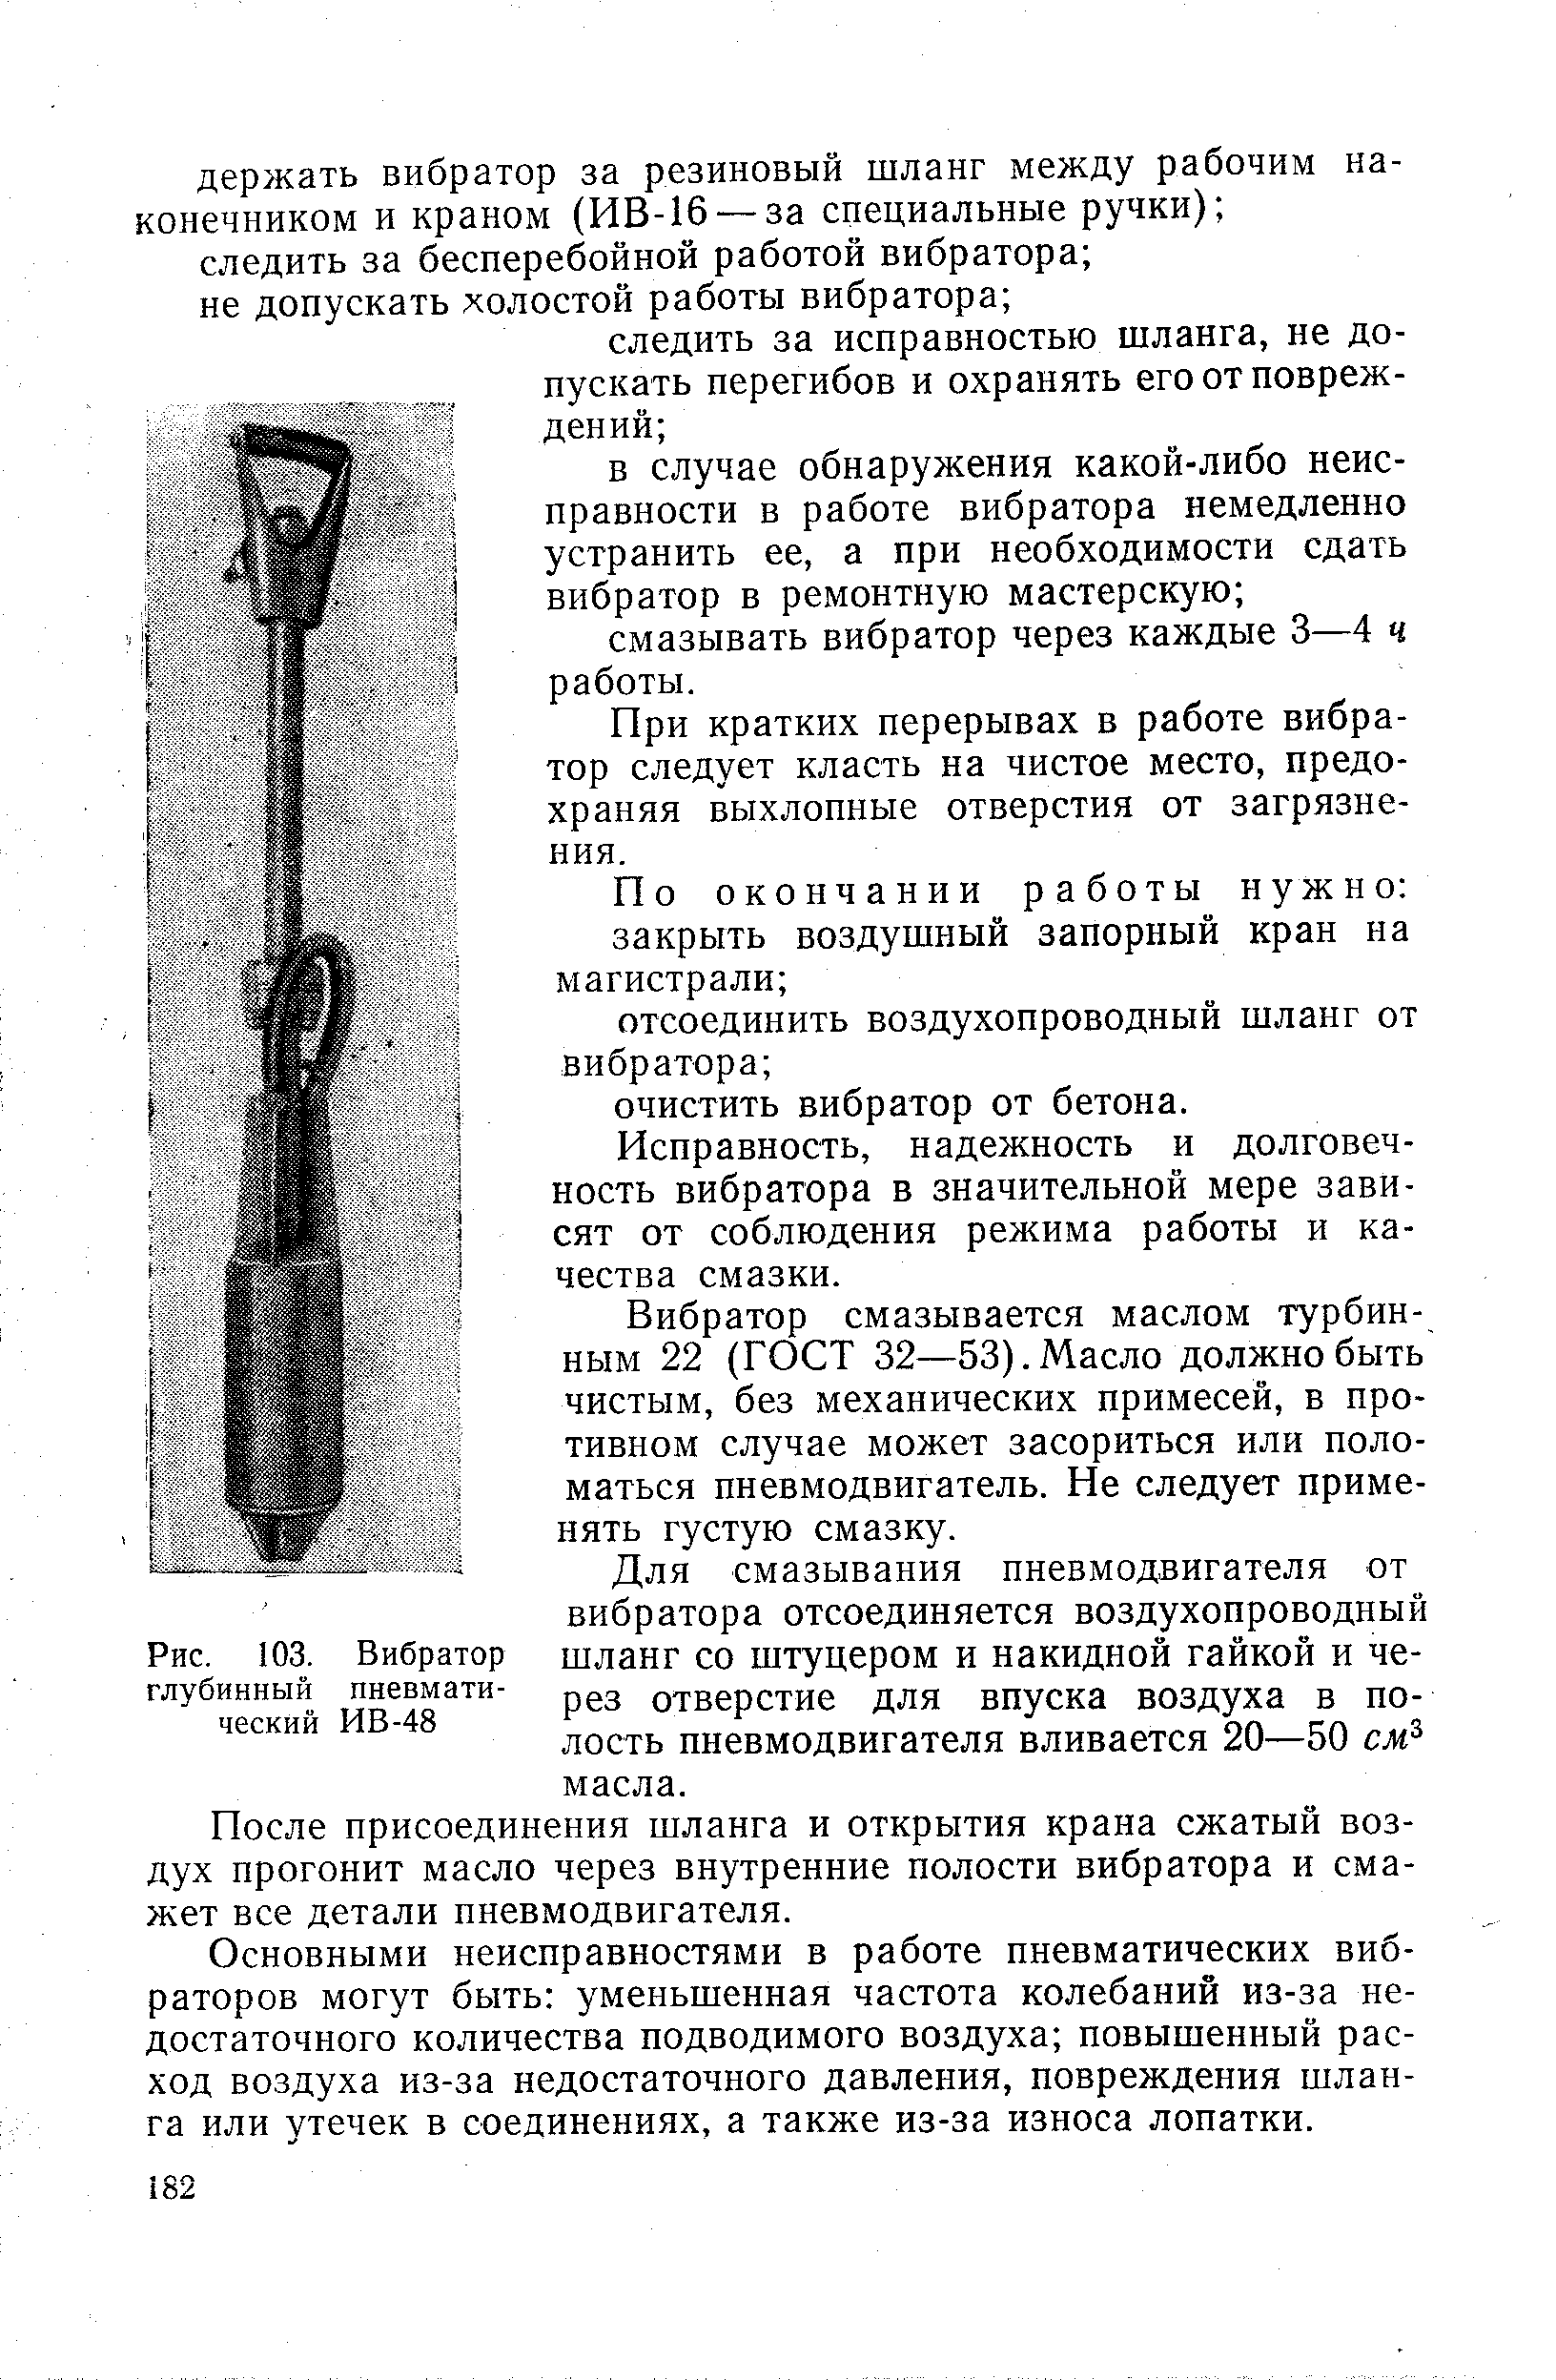 Рис. 103. Вибратор глубинный пневматический ИВ-48
